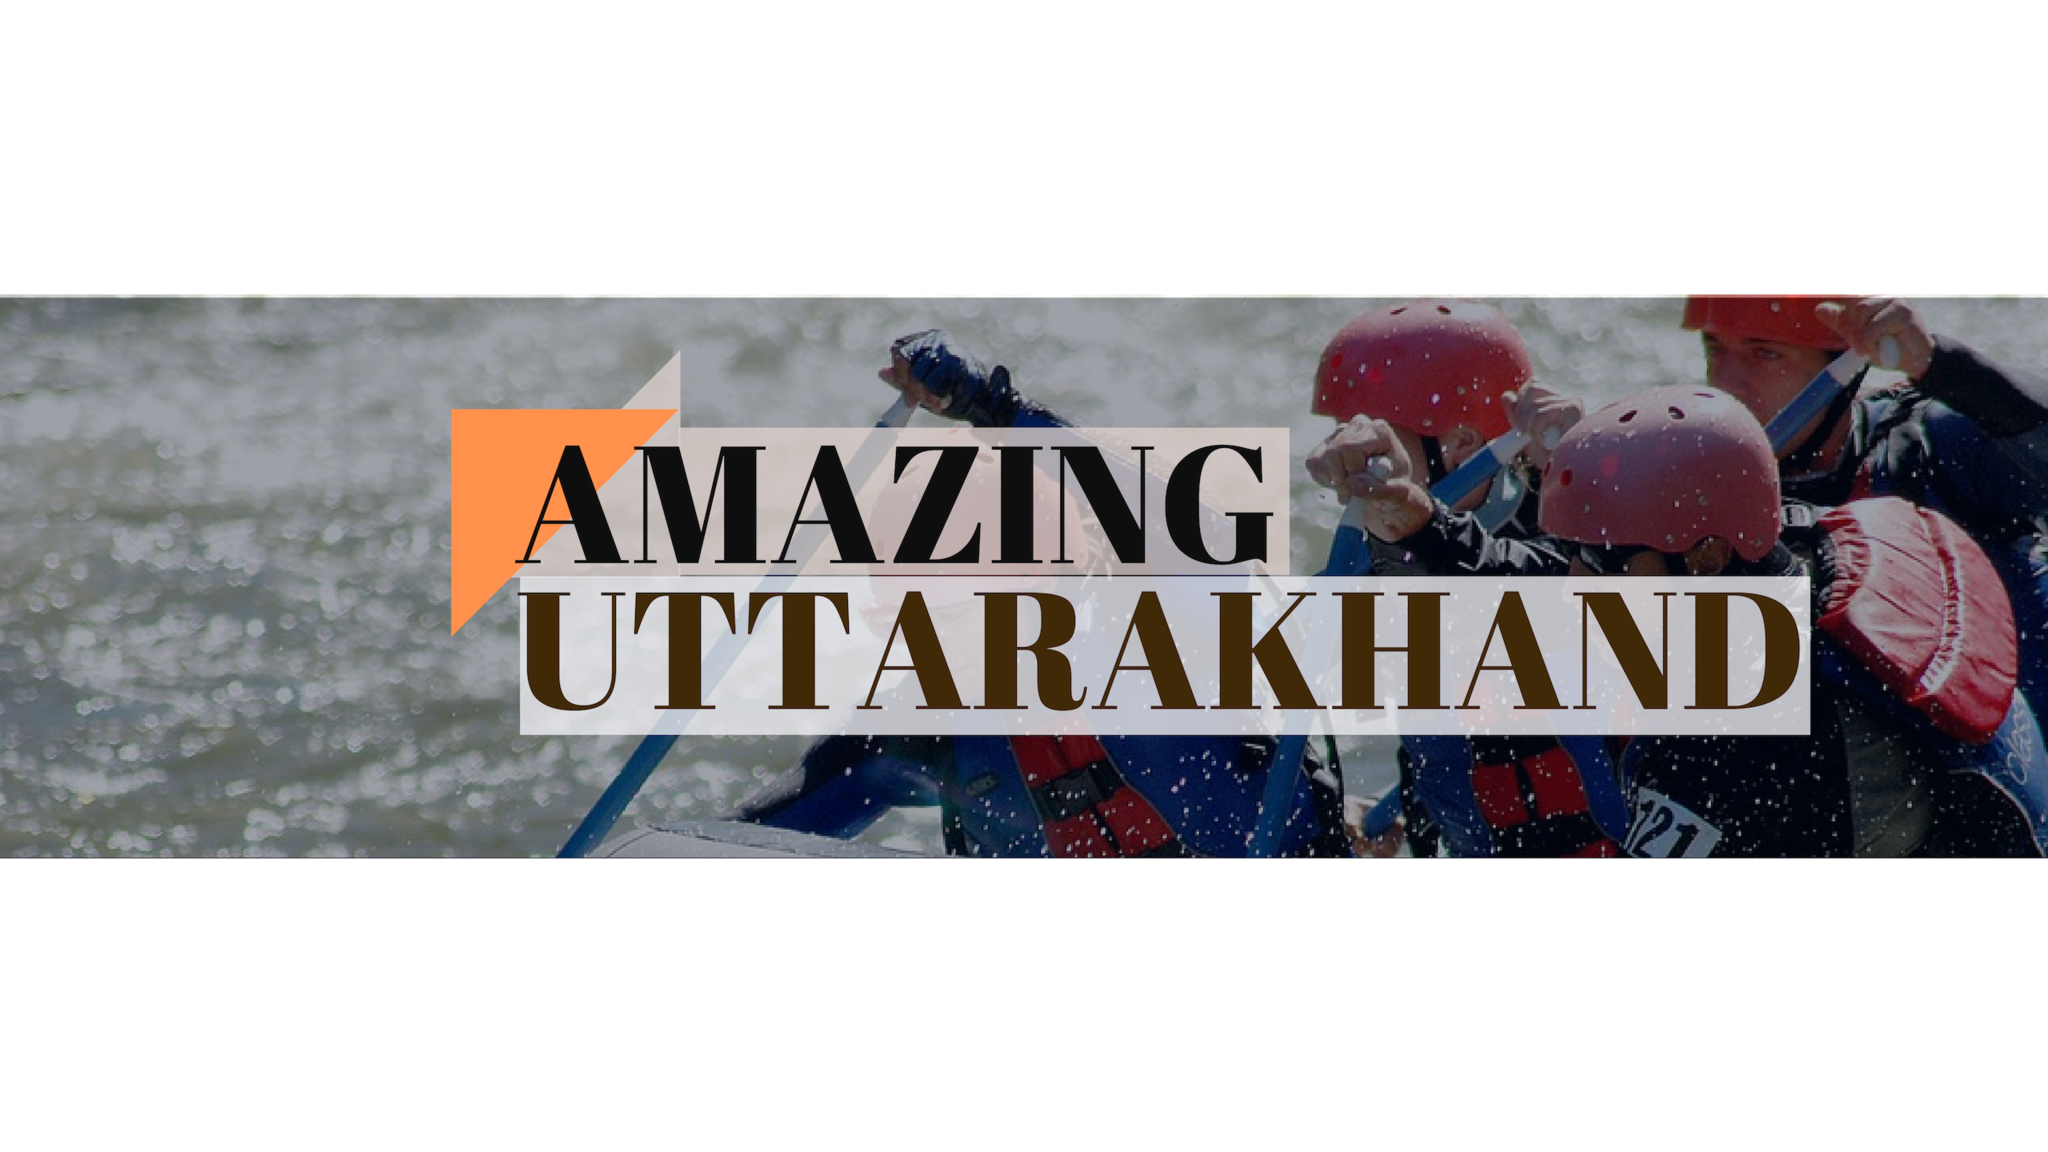 Cover Image of theamazing uttarakhand